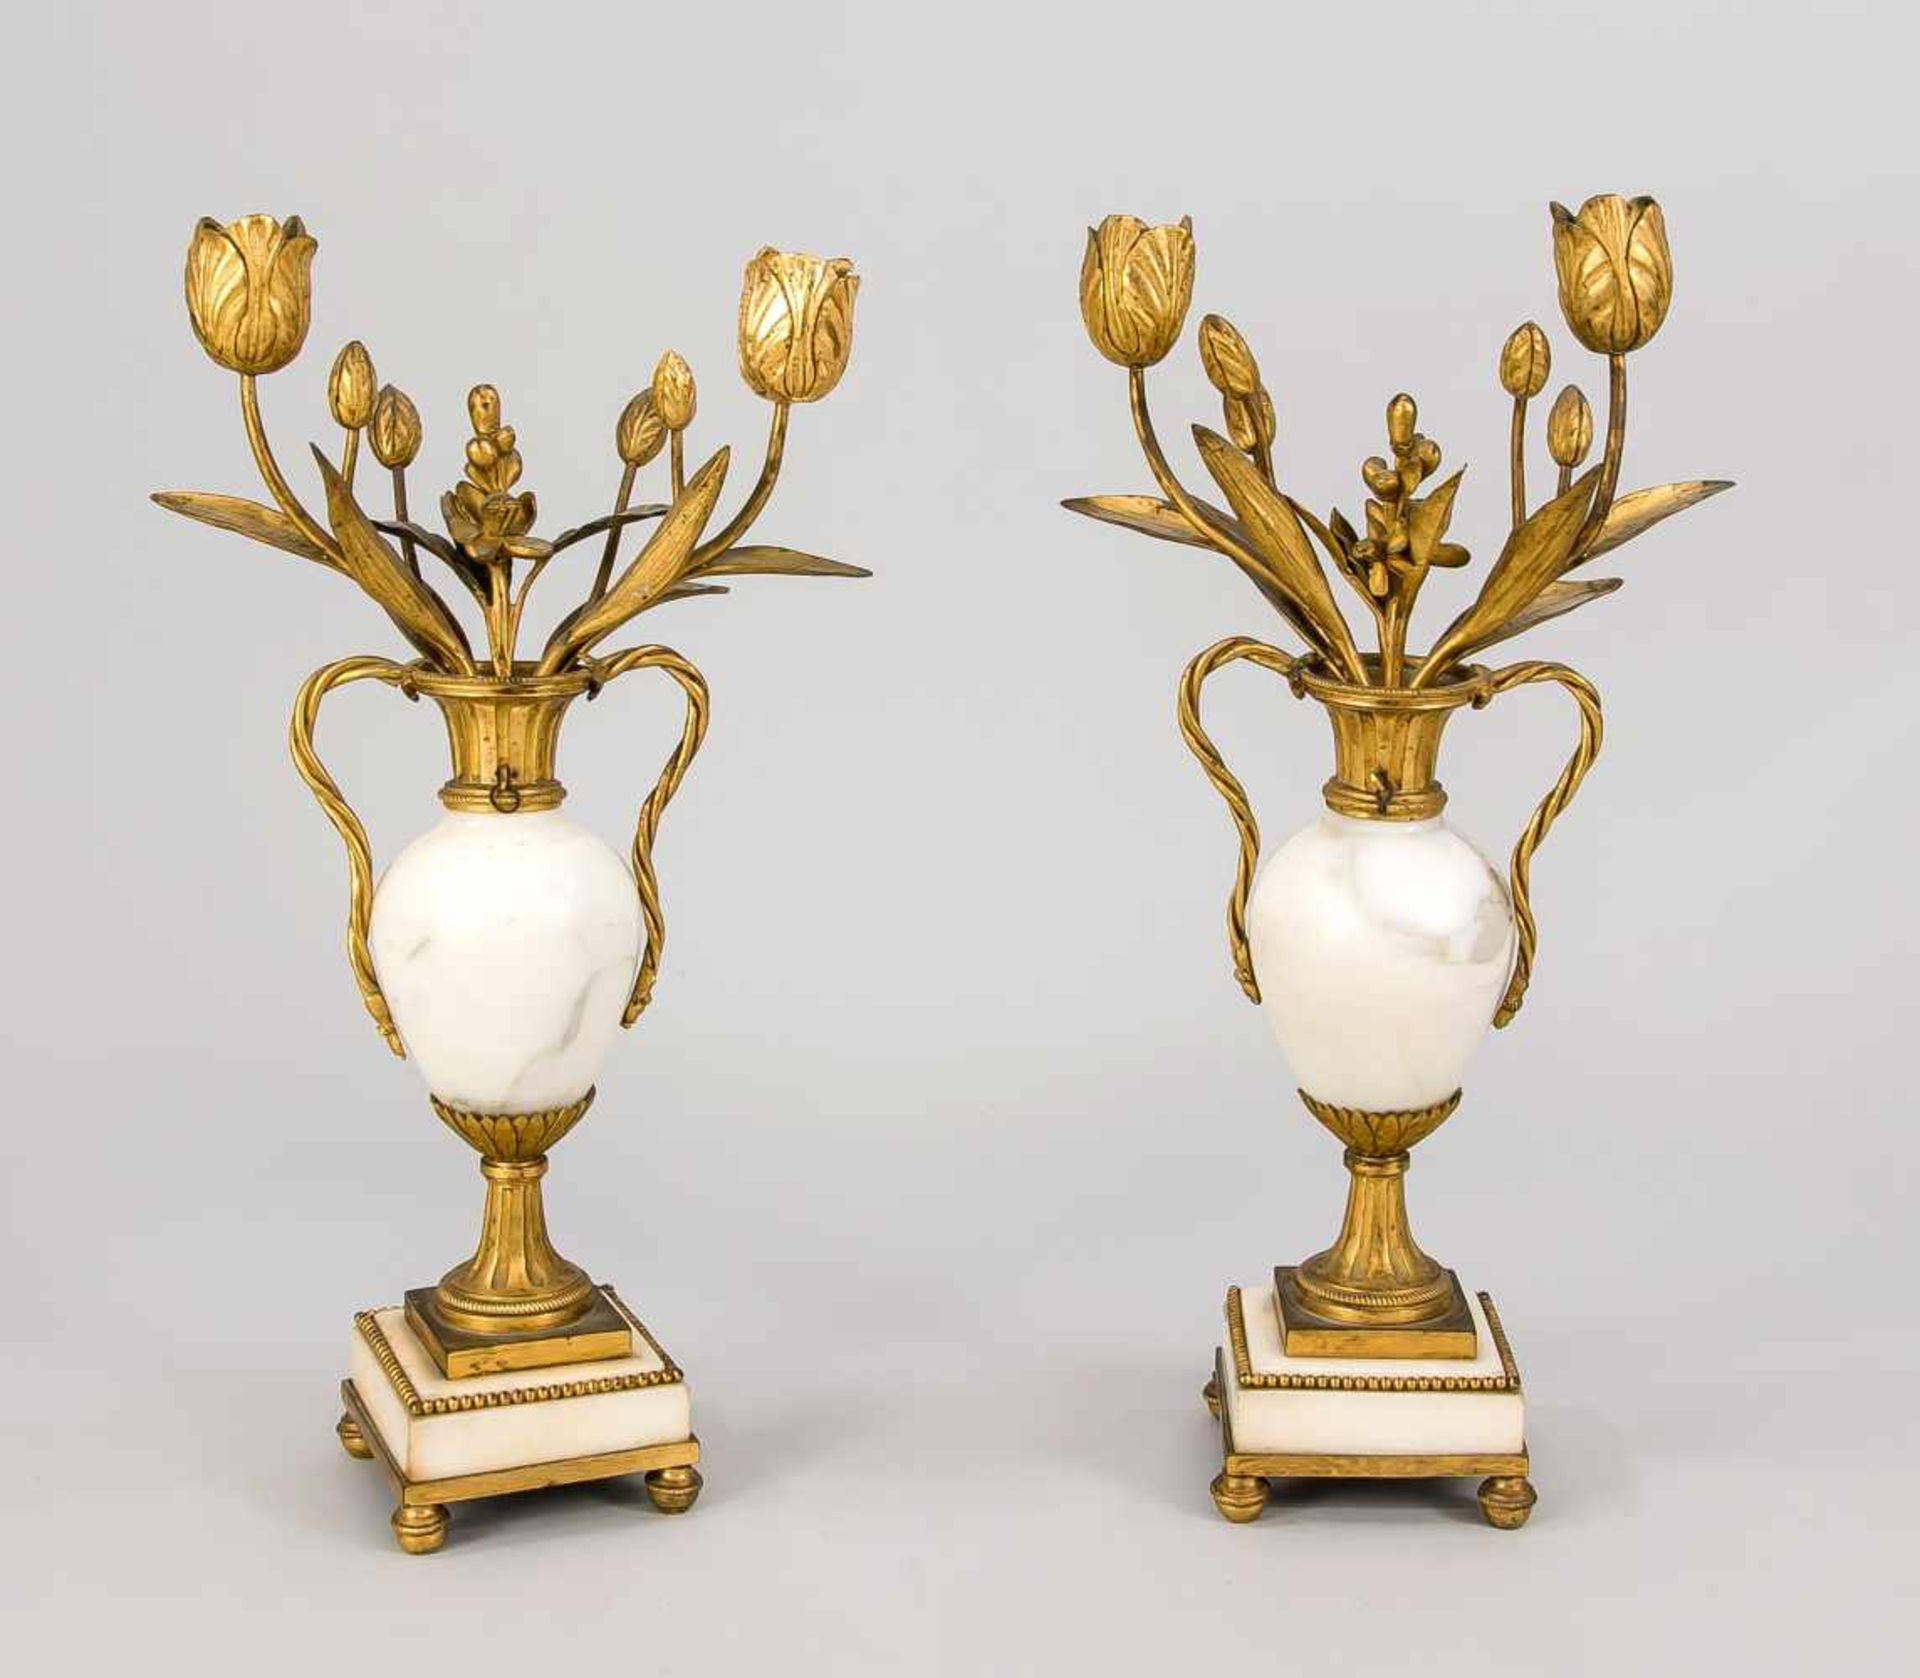 Paar Beisteller, 18. Jh., Marmor, Bronze, Feuer-vergoldet. Quadratisches Marmorpostament